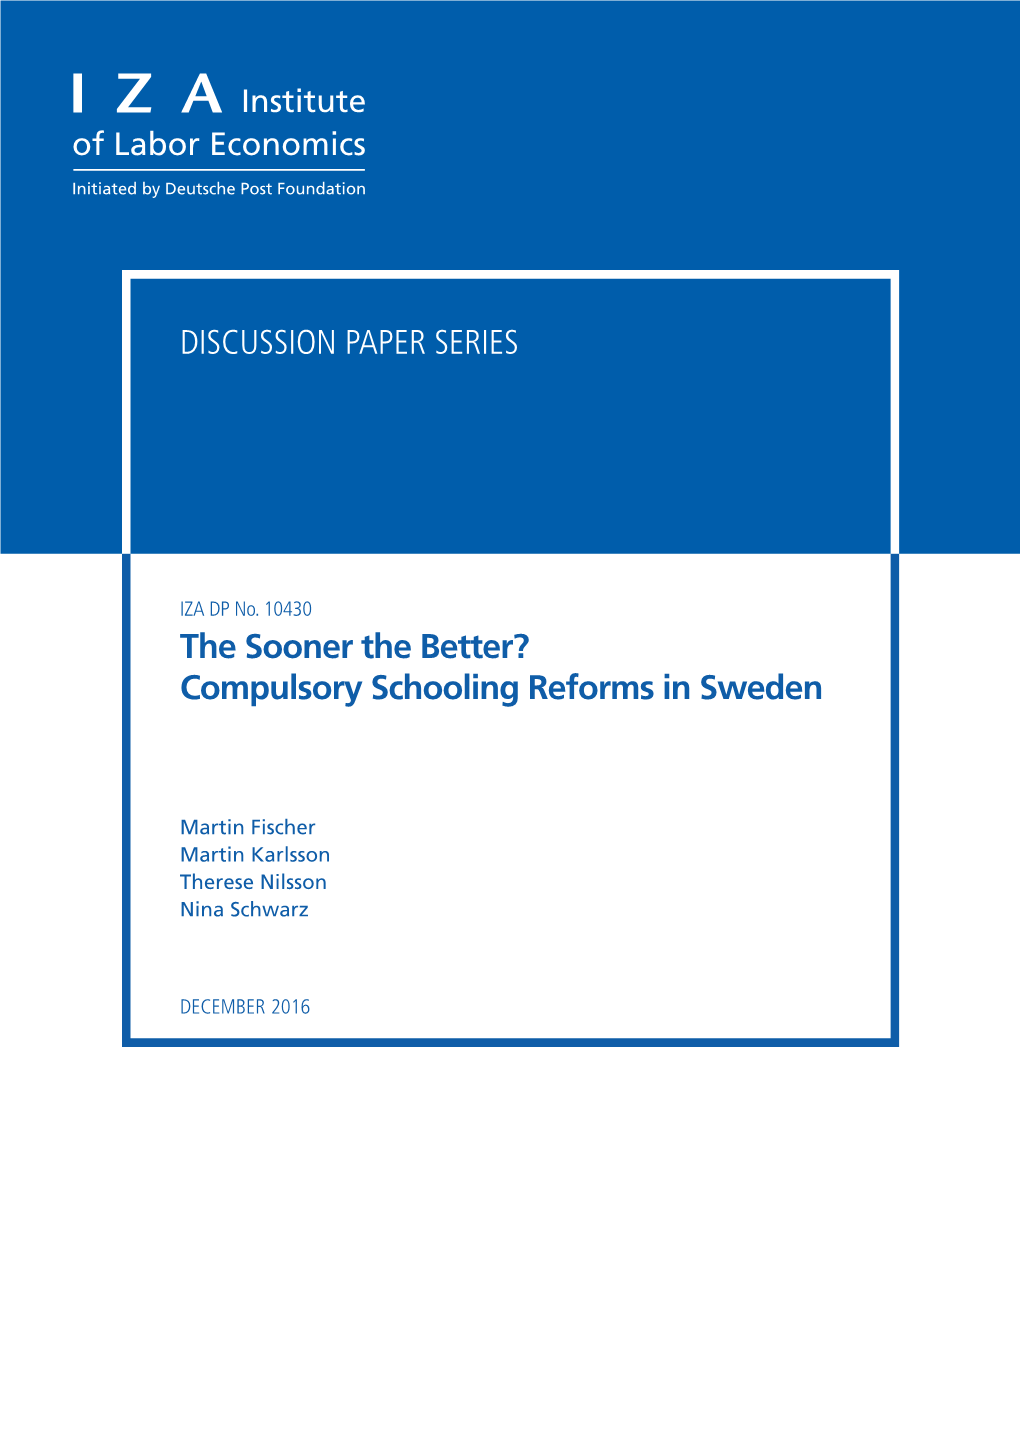 Compulsory Schooling Reforms in Sweden